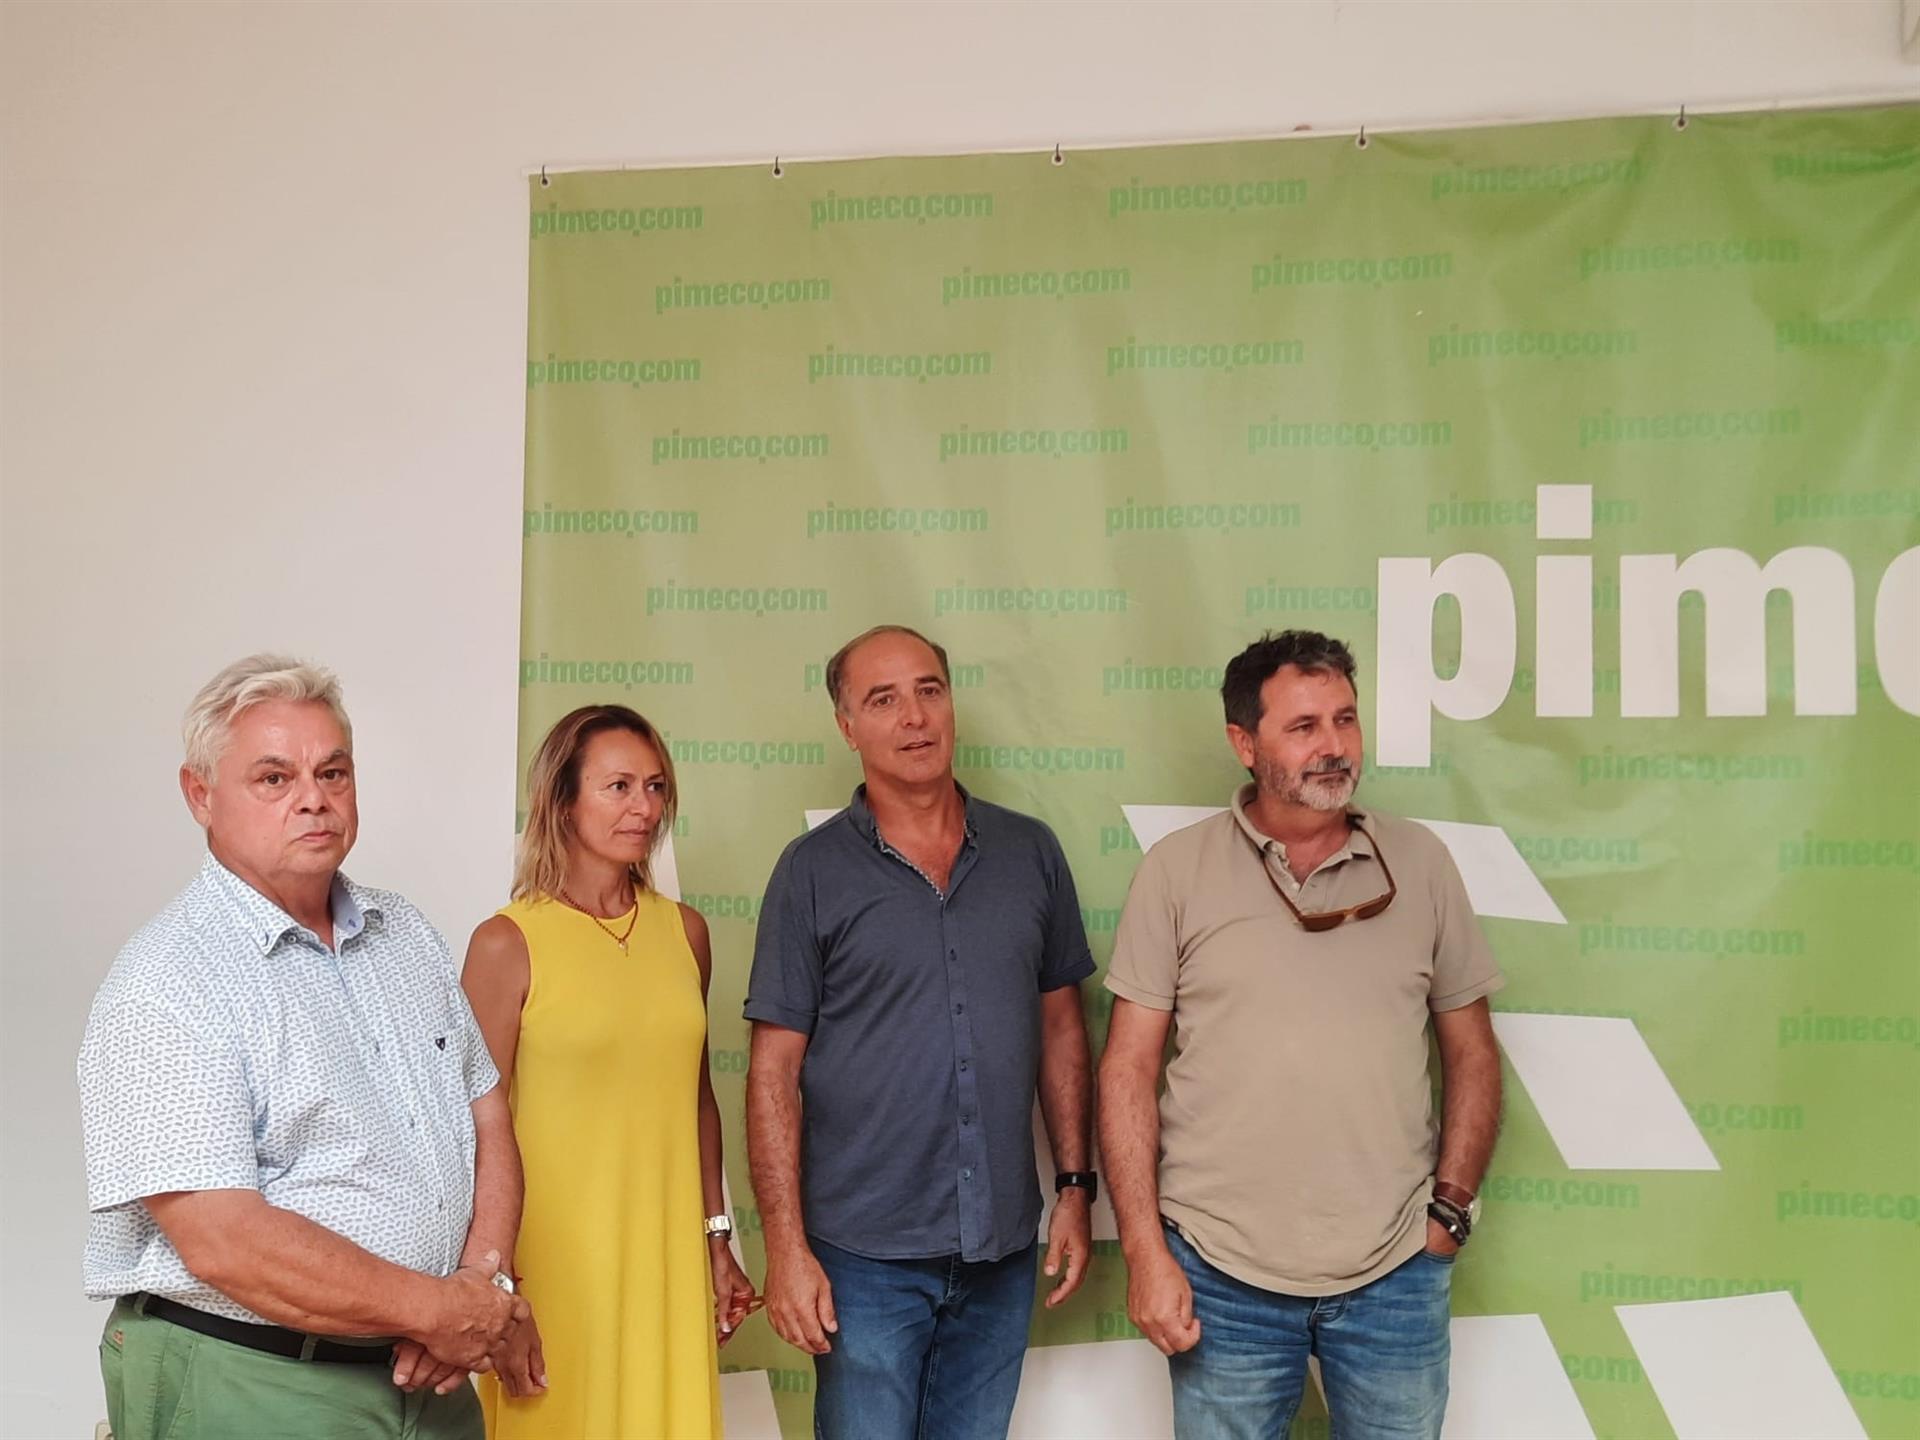 El presidente de Pimeco, Toni Fuster, junto con otros miembros de la junta directiva. (Foto: Europa Press)